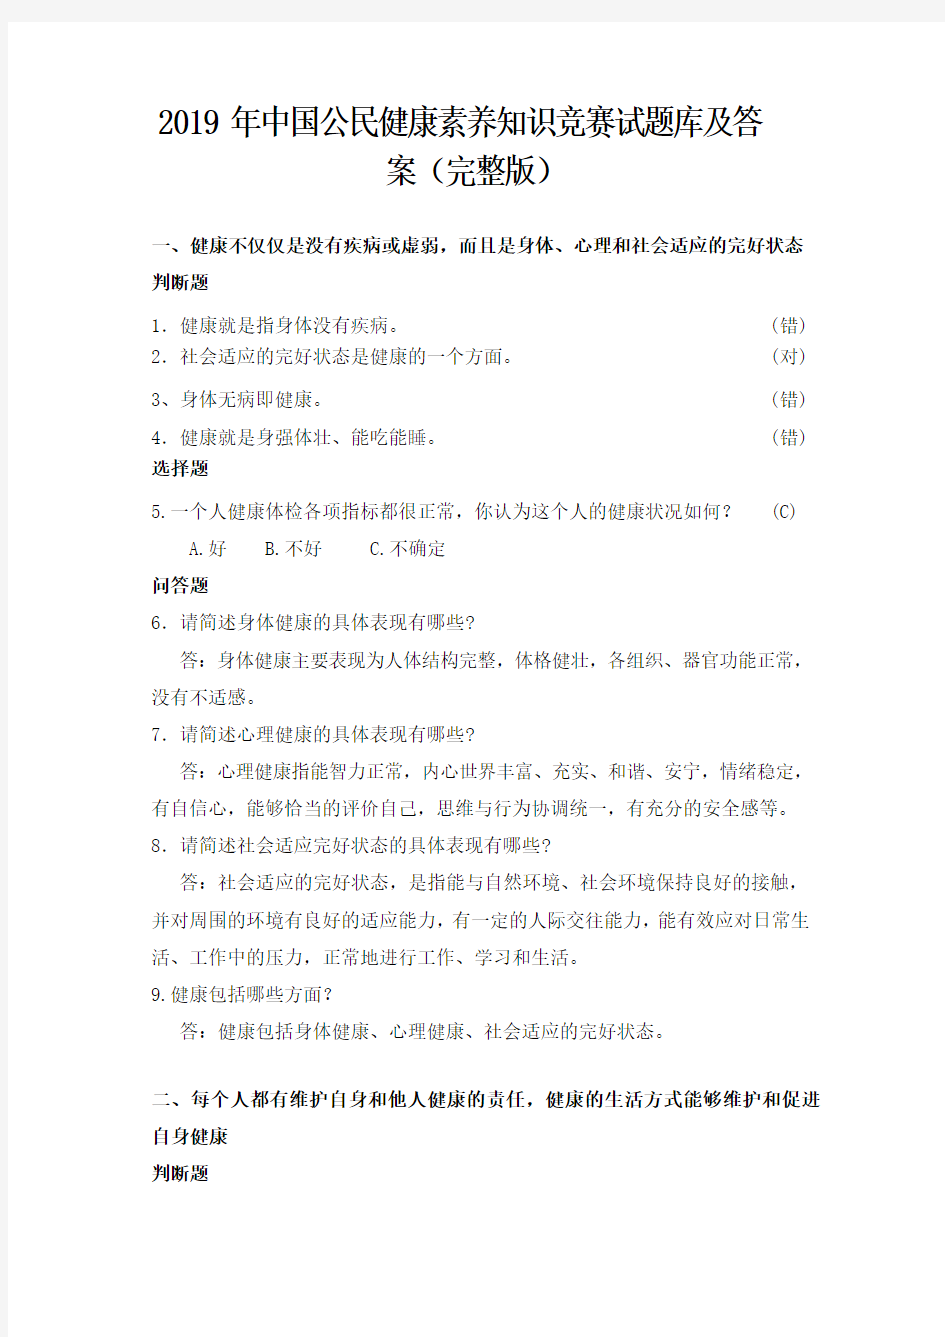 2019年中国公民健康素养知识竞赛试题库及答案(完整版)